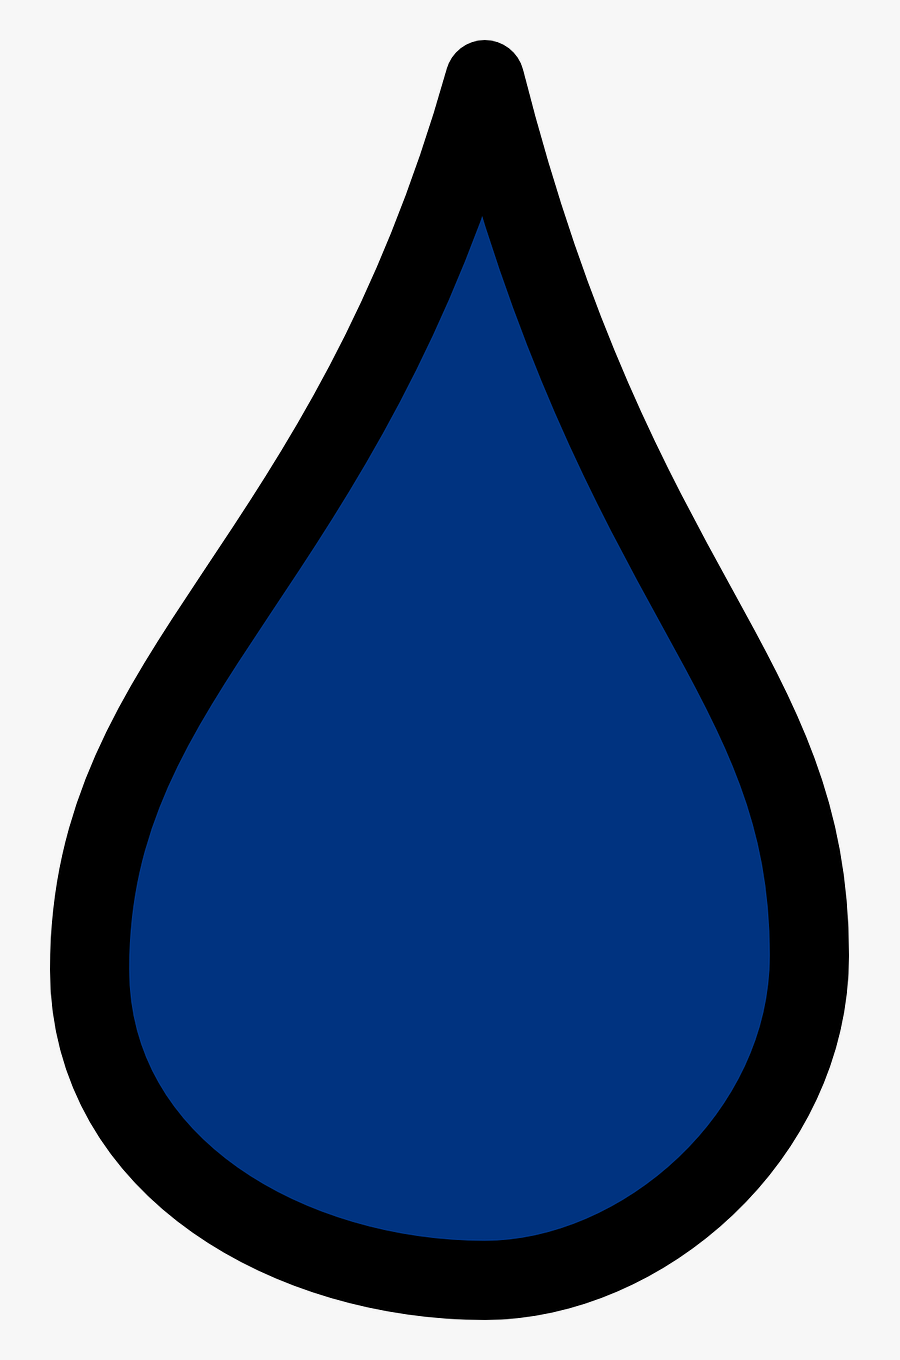 Drop Blue Water Free Picture - Blue Drop Clipart, Transparent Clipart